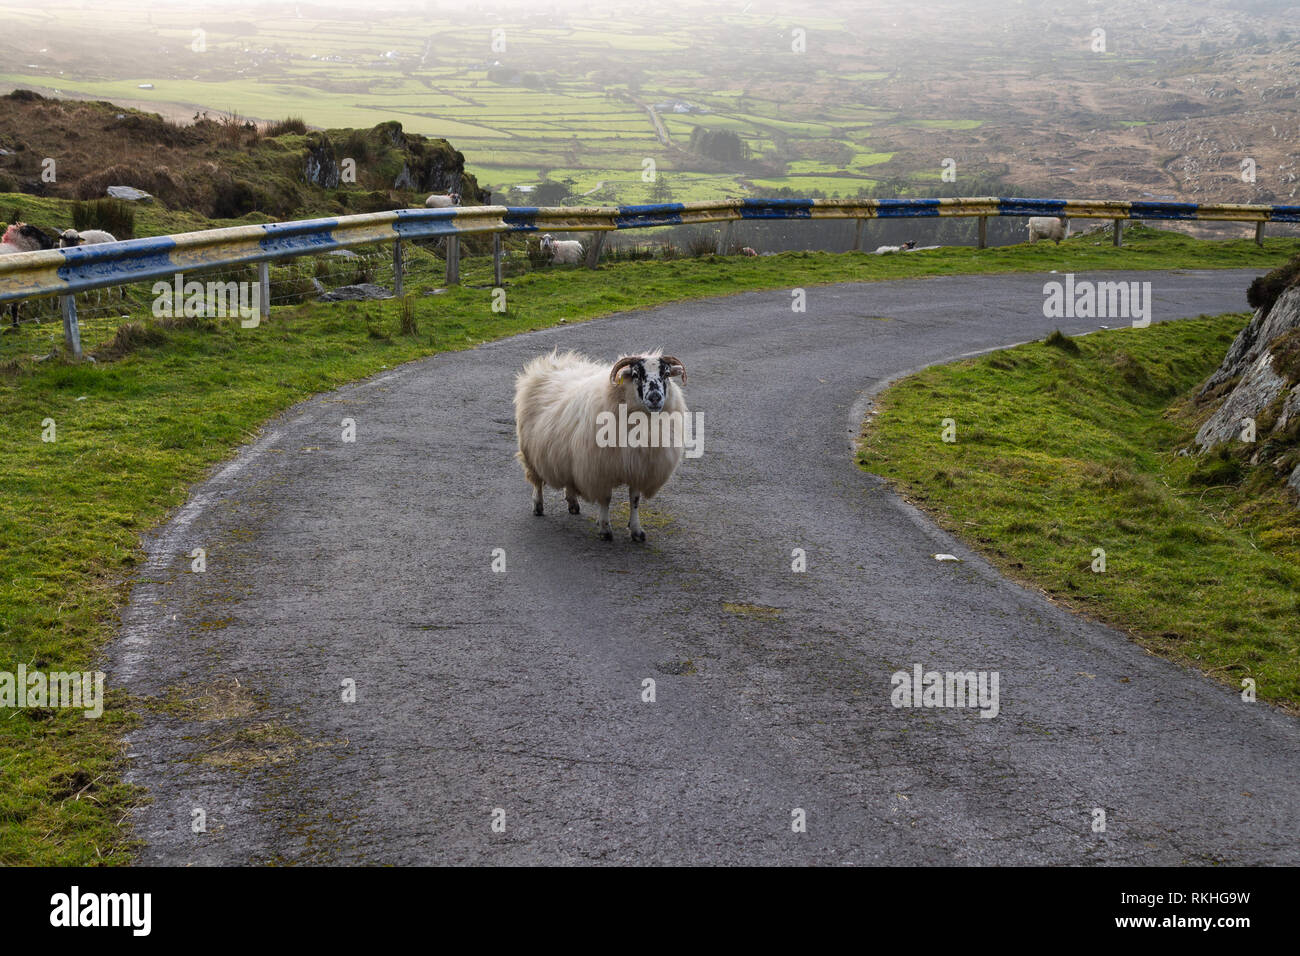 La brebis de race mixte bloquer une route à flanc de montagne en Irlande. Banque D'Images